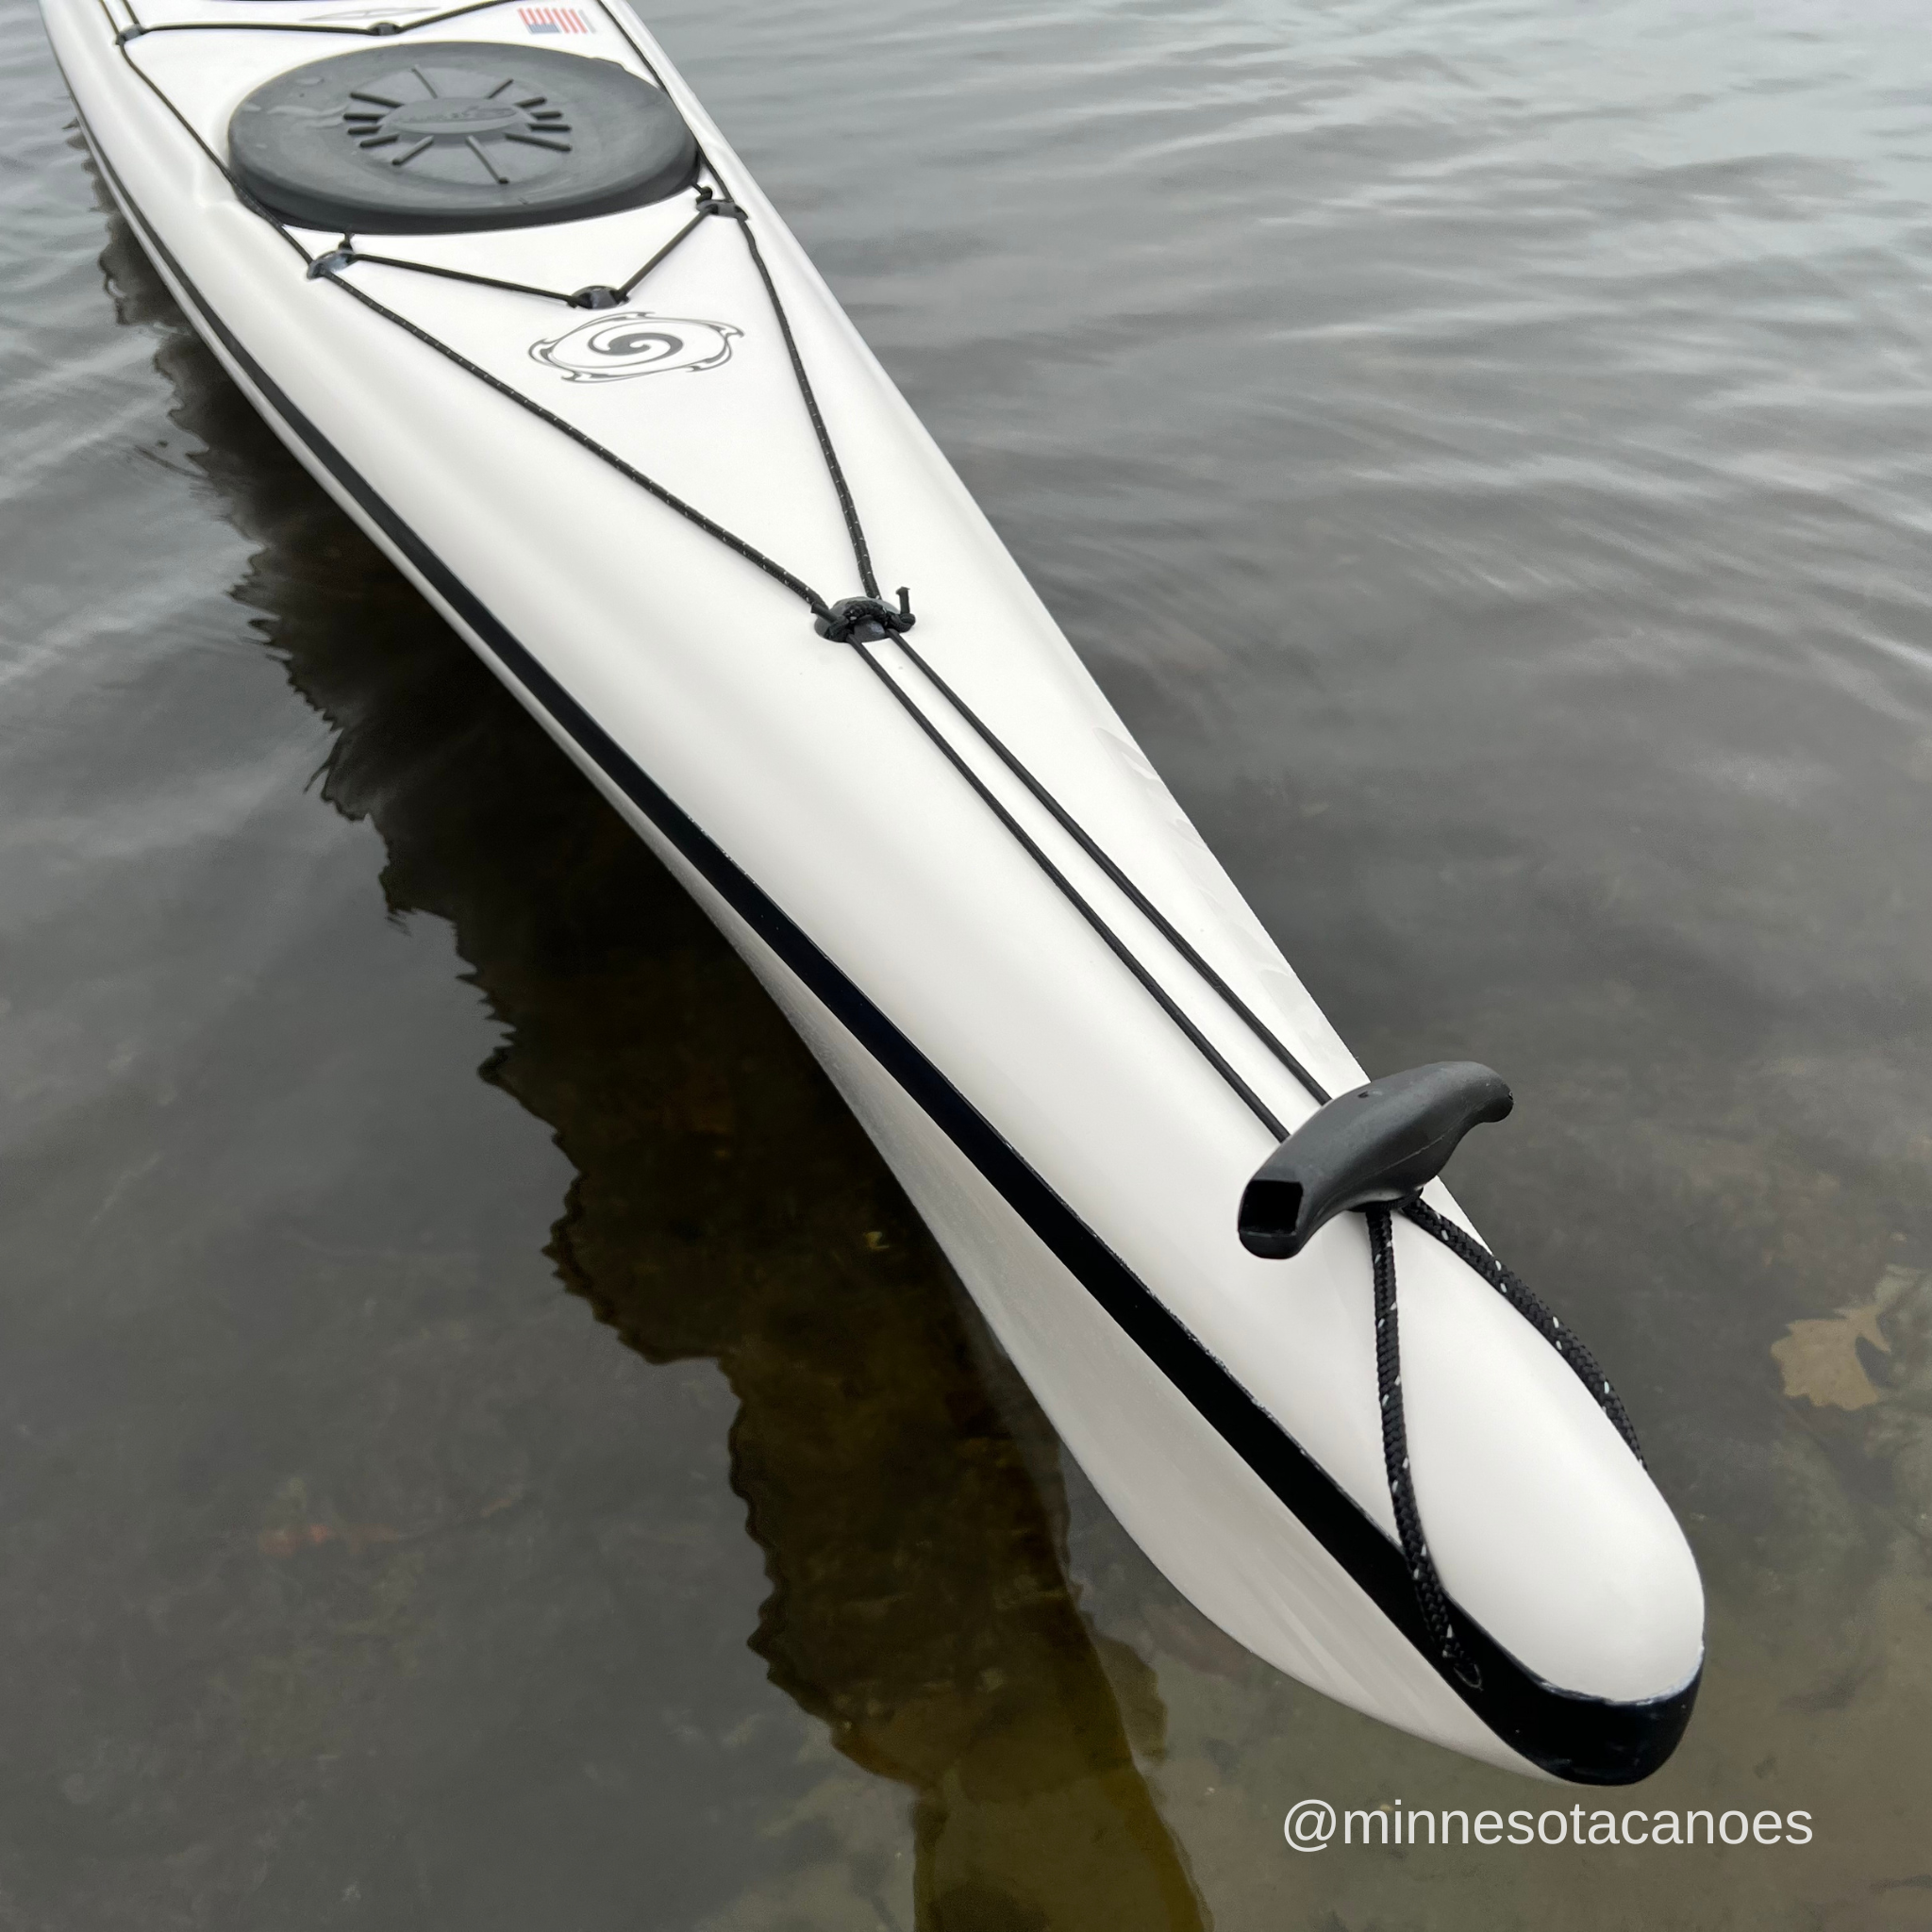 udvide Afståelse komfort PRANA (17' 0") White and Black Color Danish Style Current Designs Kaya –  Minnesota Canoes